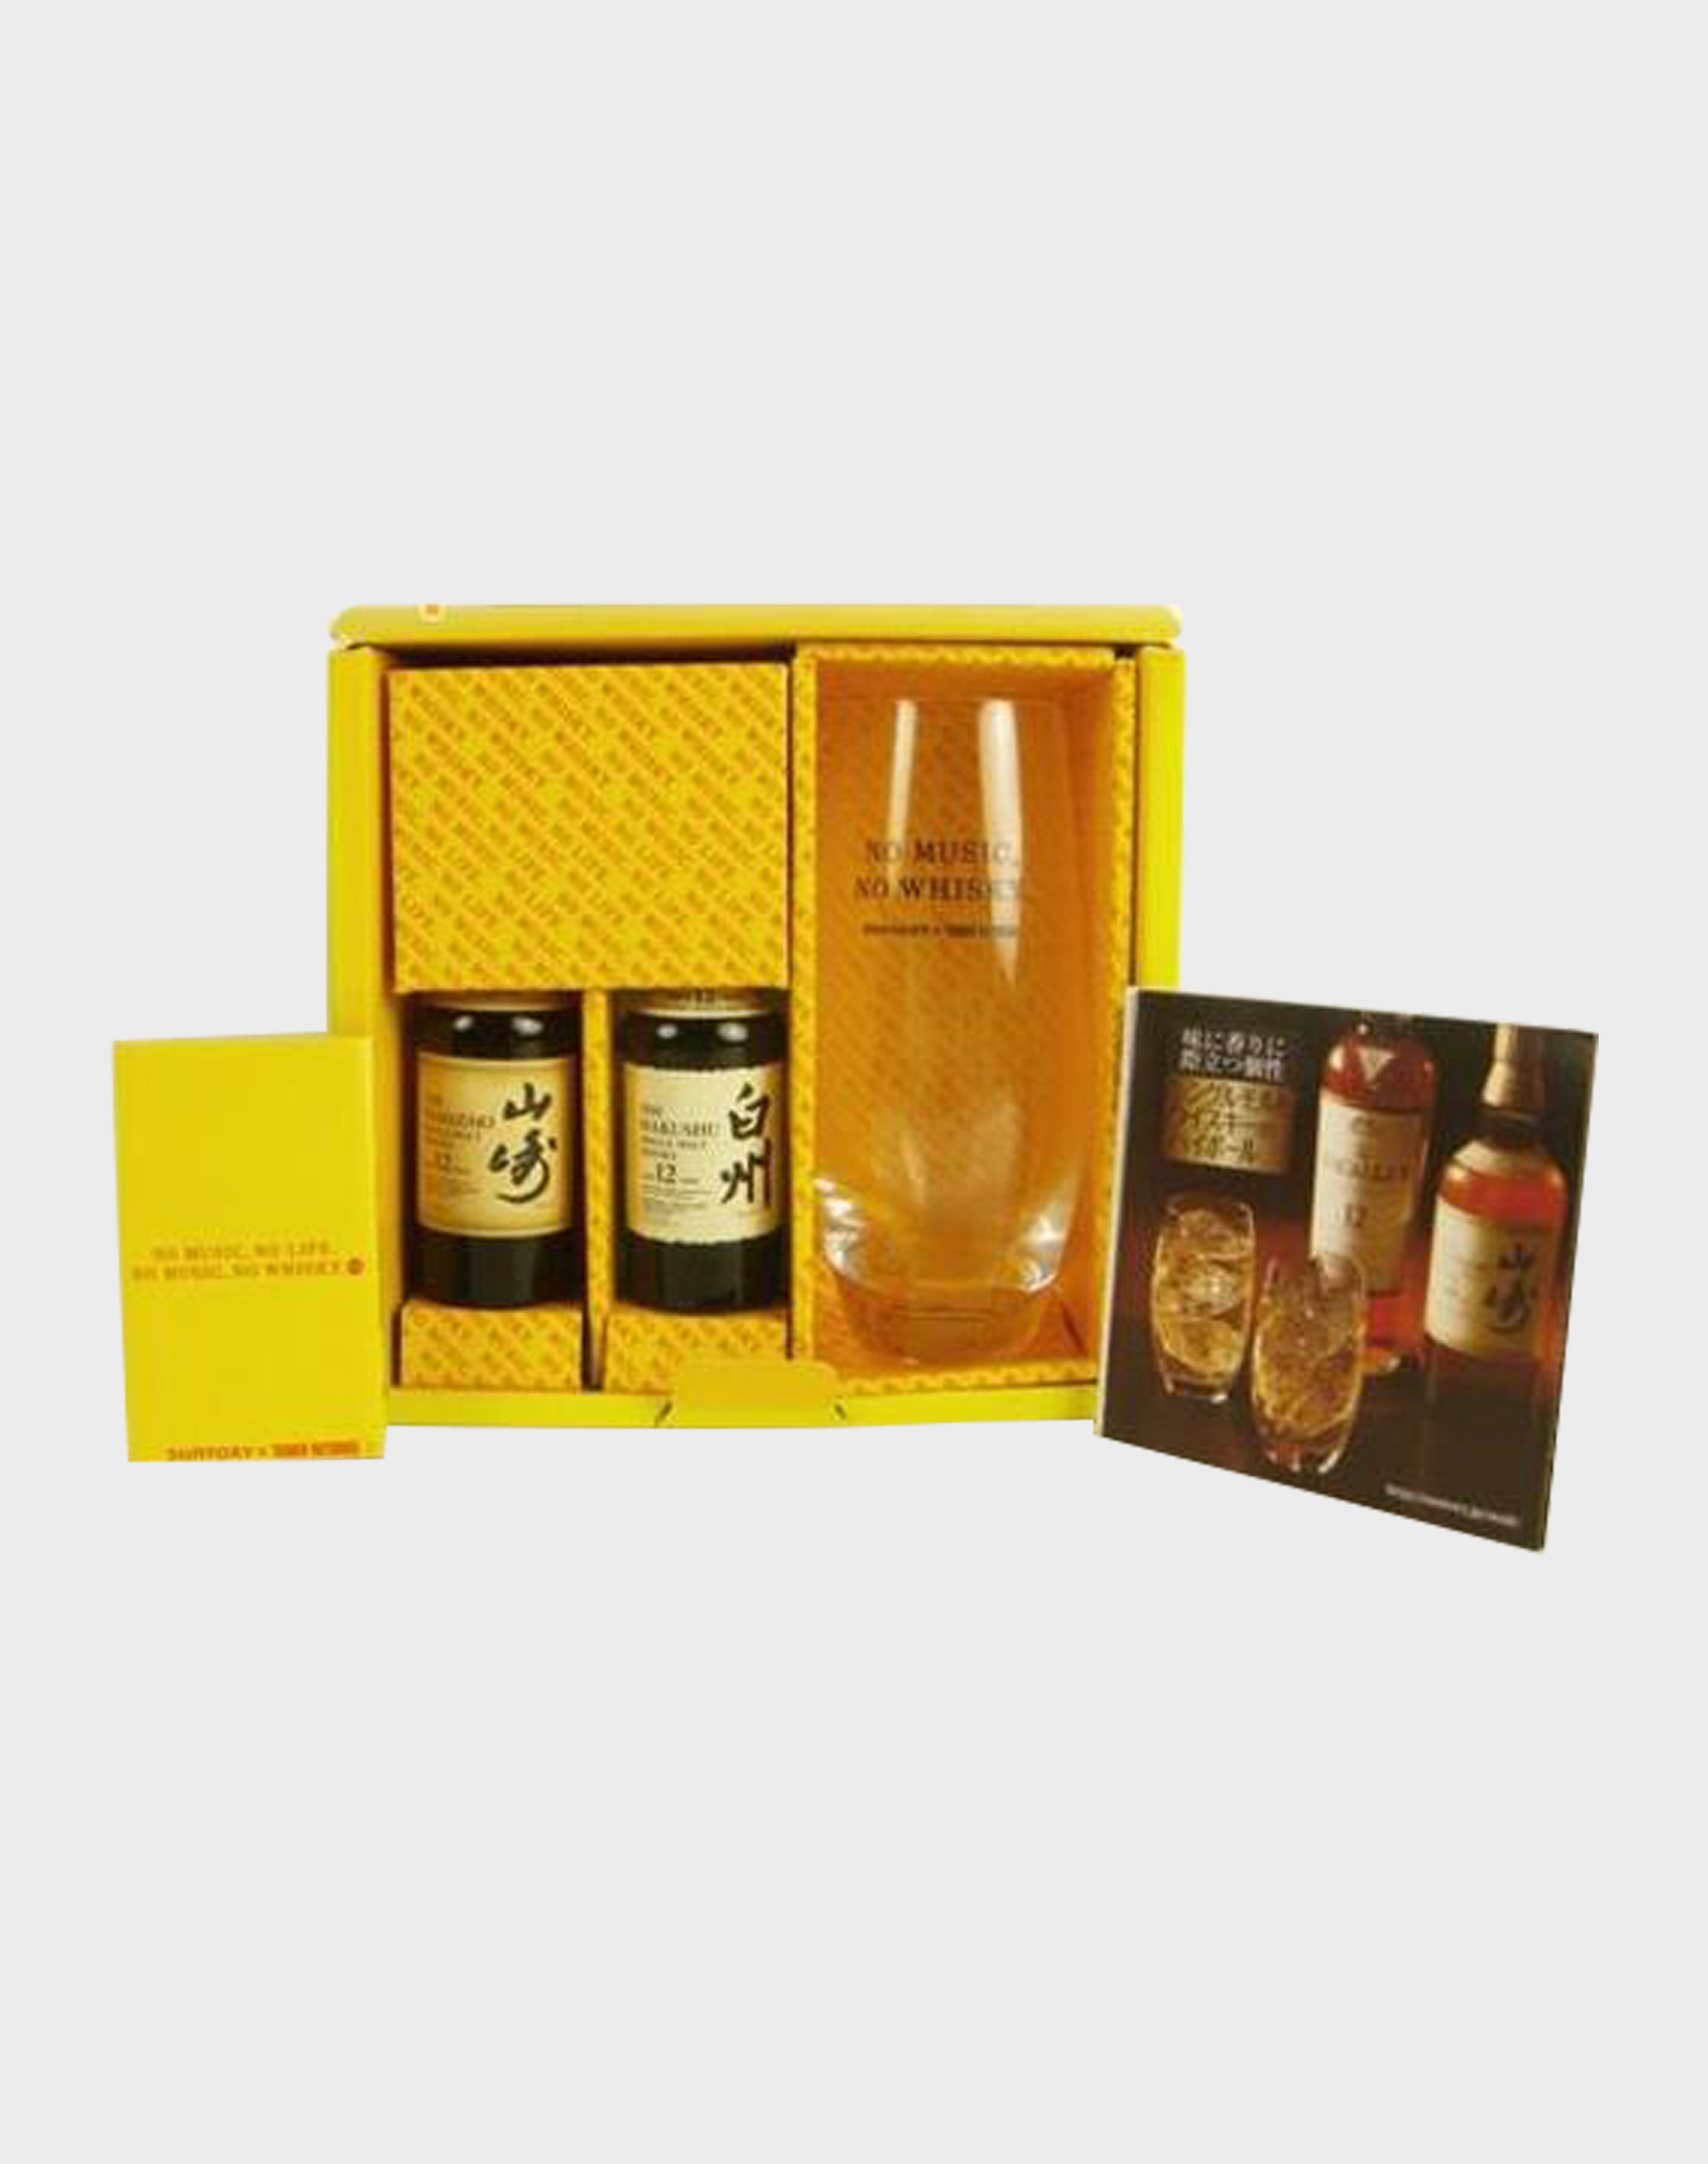 Yamazaki Japanese Whisky and Gourmet Delight Gift Basket